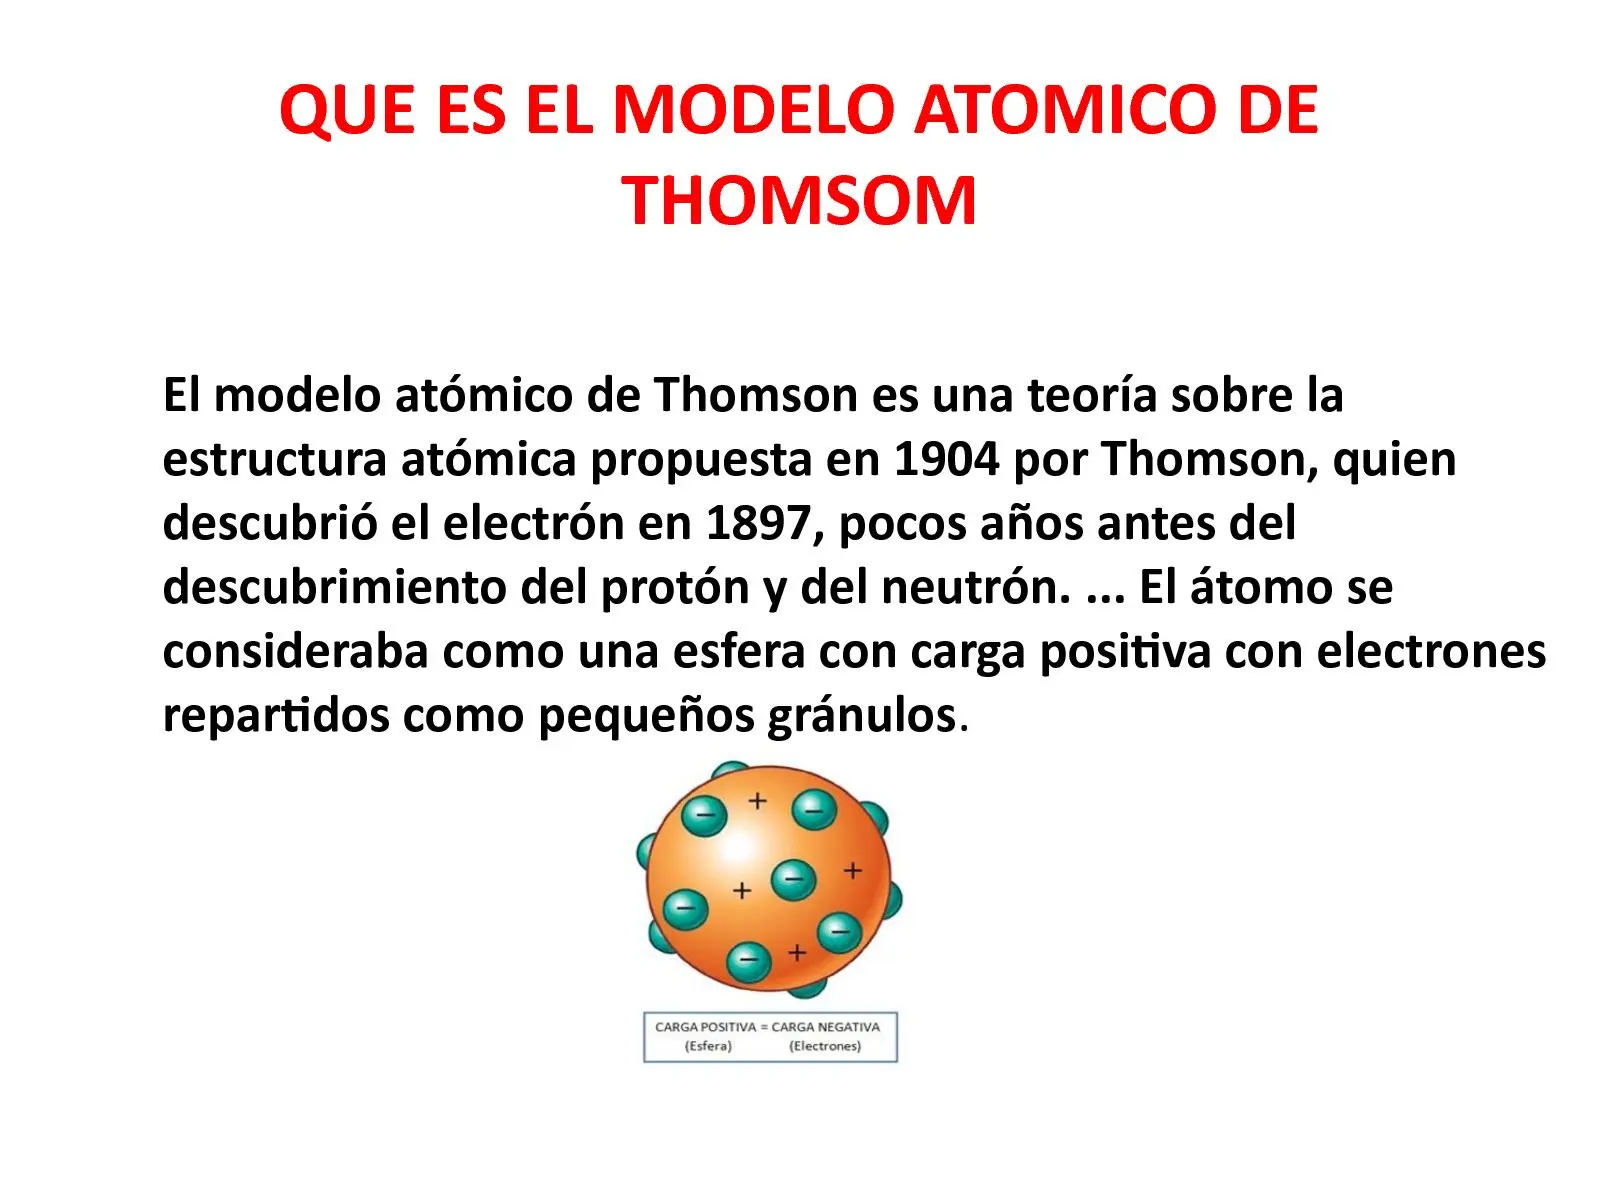 modelo atomico de thomson resumen - Cuál fue la partícula descubierta por Thomson